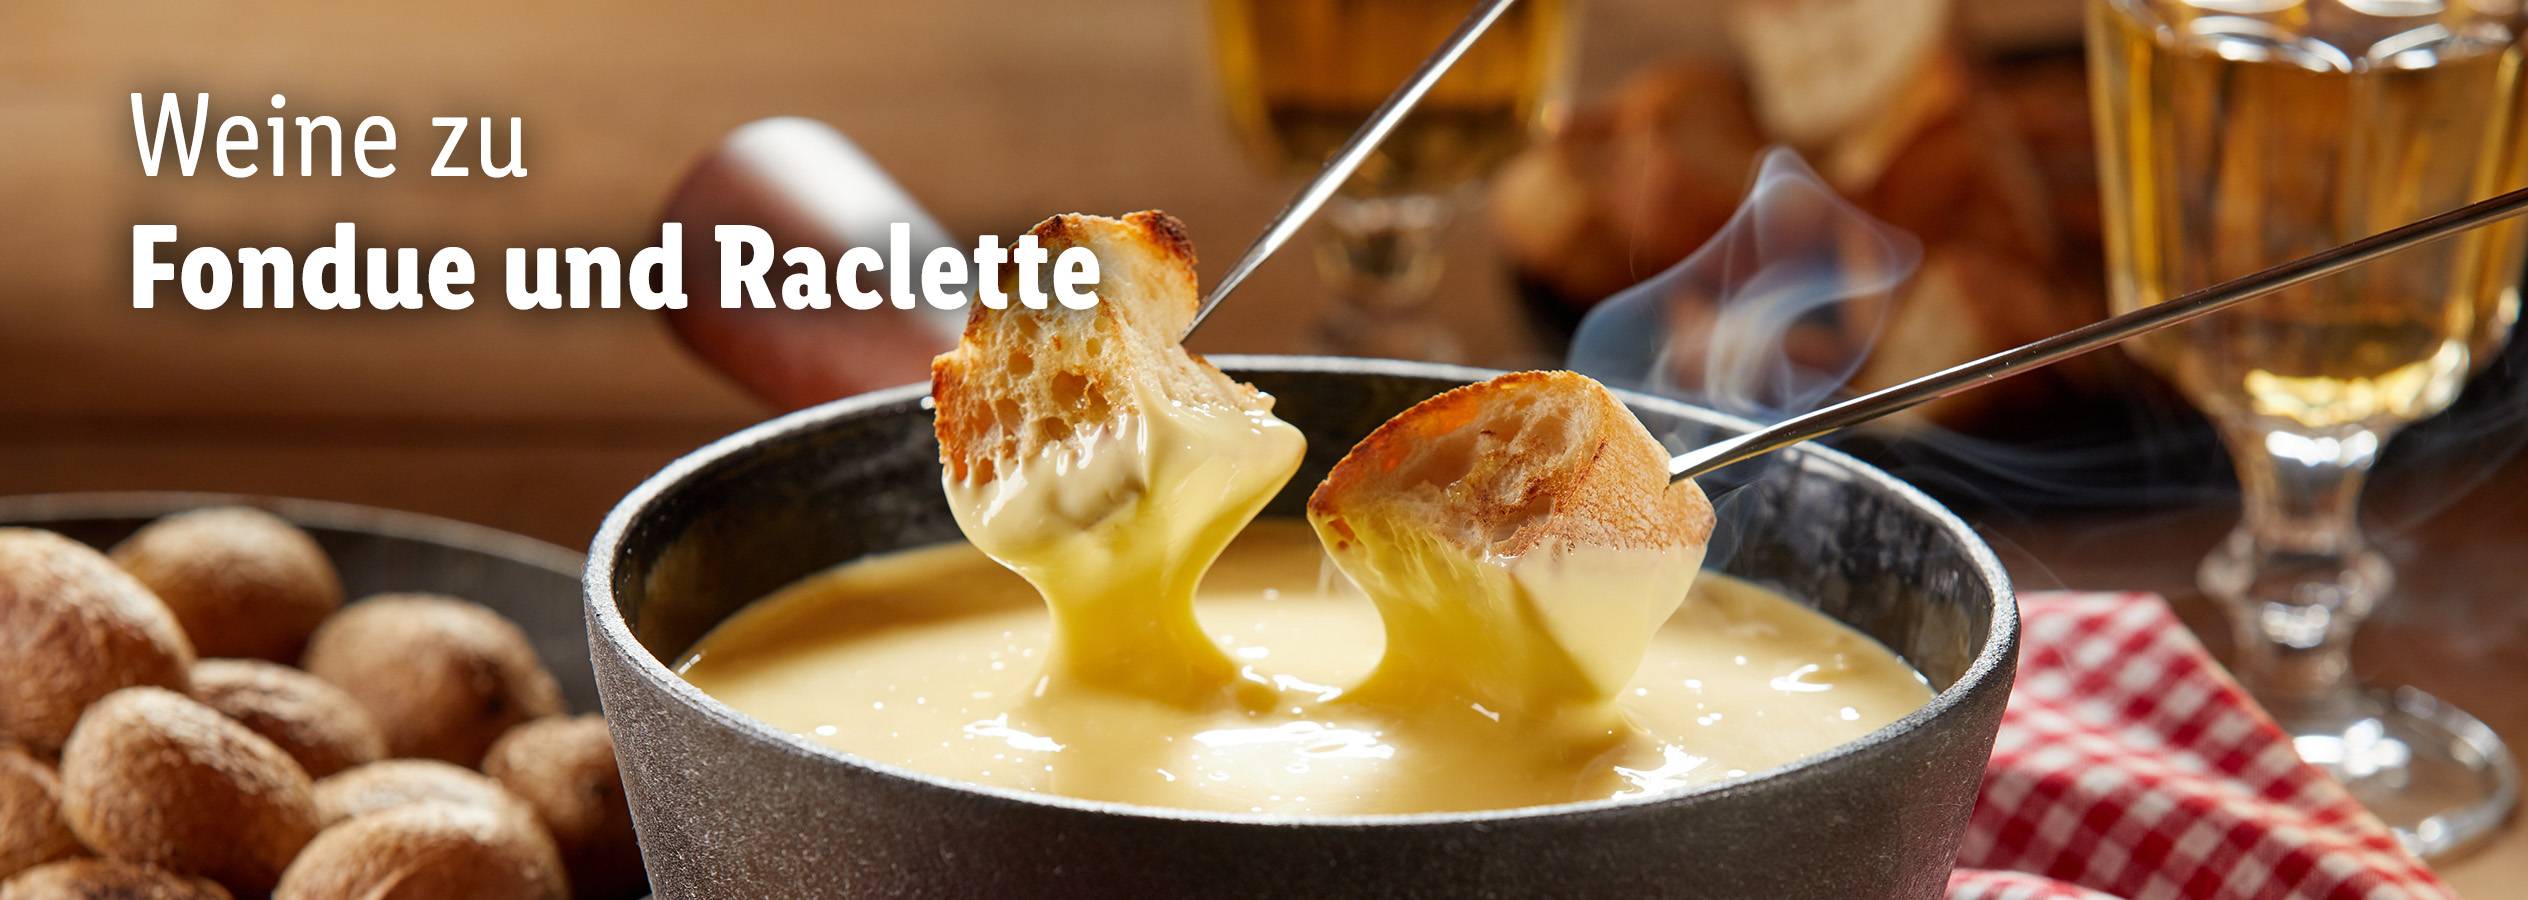 Weine zu Raclette: Premium-Empfehlungen im Lidl Onlineshop